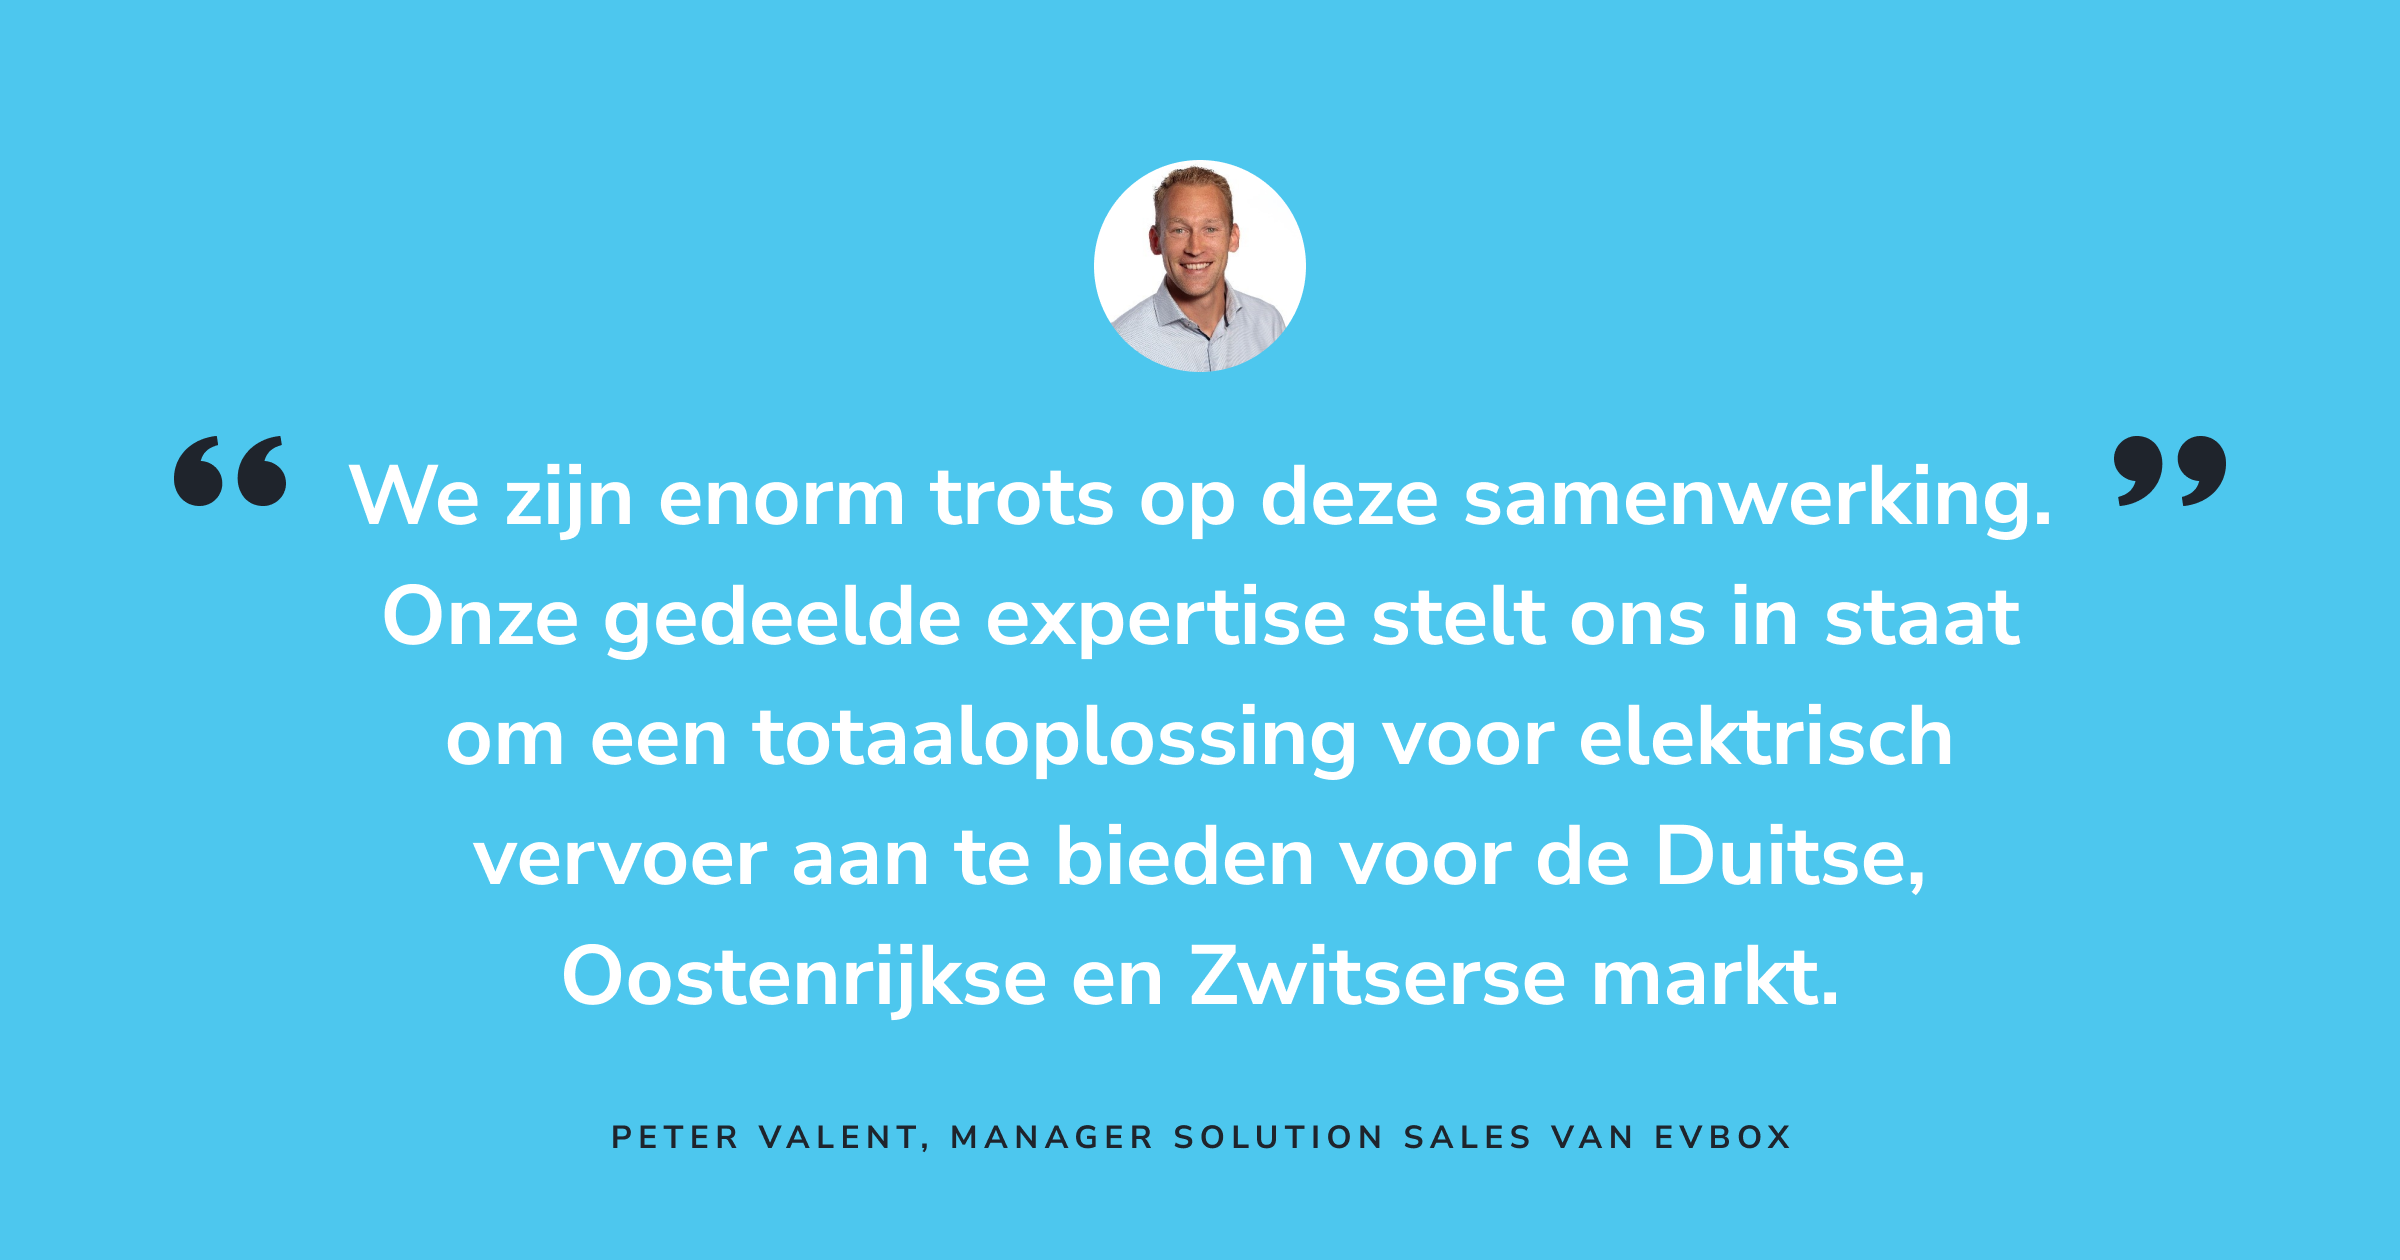 Een citaat van Peter Valent, Manager Solution Sales van EVBox. “We zijn enorm trots op deze samenwerking. Onze gedeelde expertise stelt ons in staat om een totaaloplossing voor elektrisch vervoer aan te bieden voor de Duitse, Oostenrijkse en Zwitserse markt.”